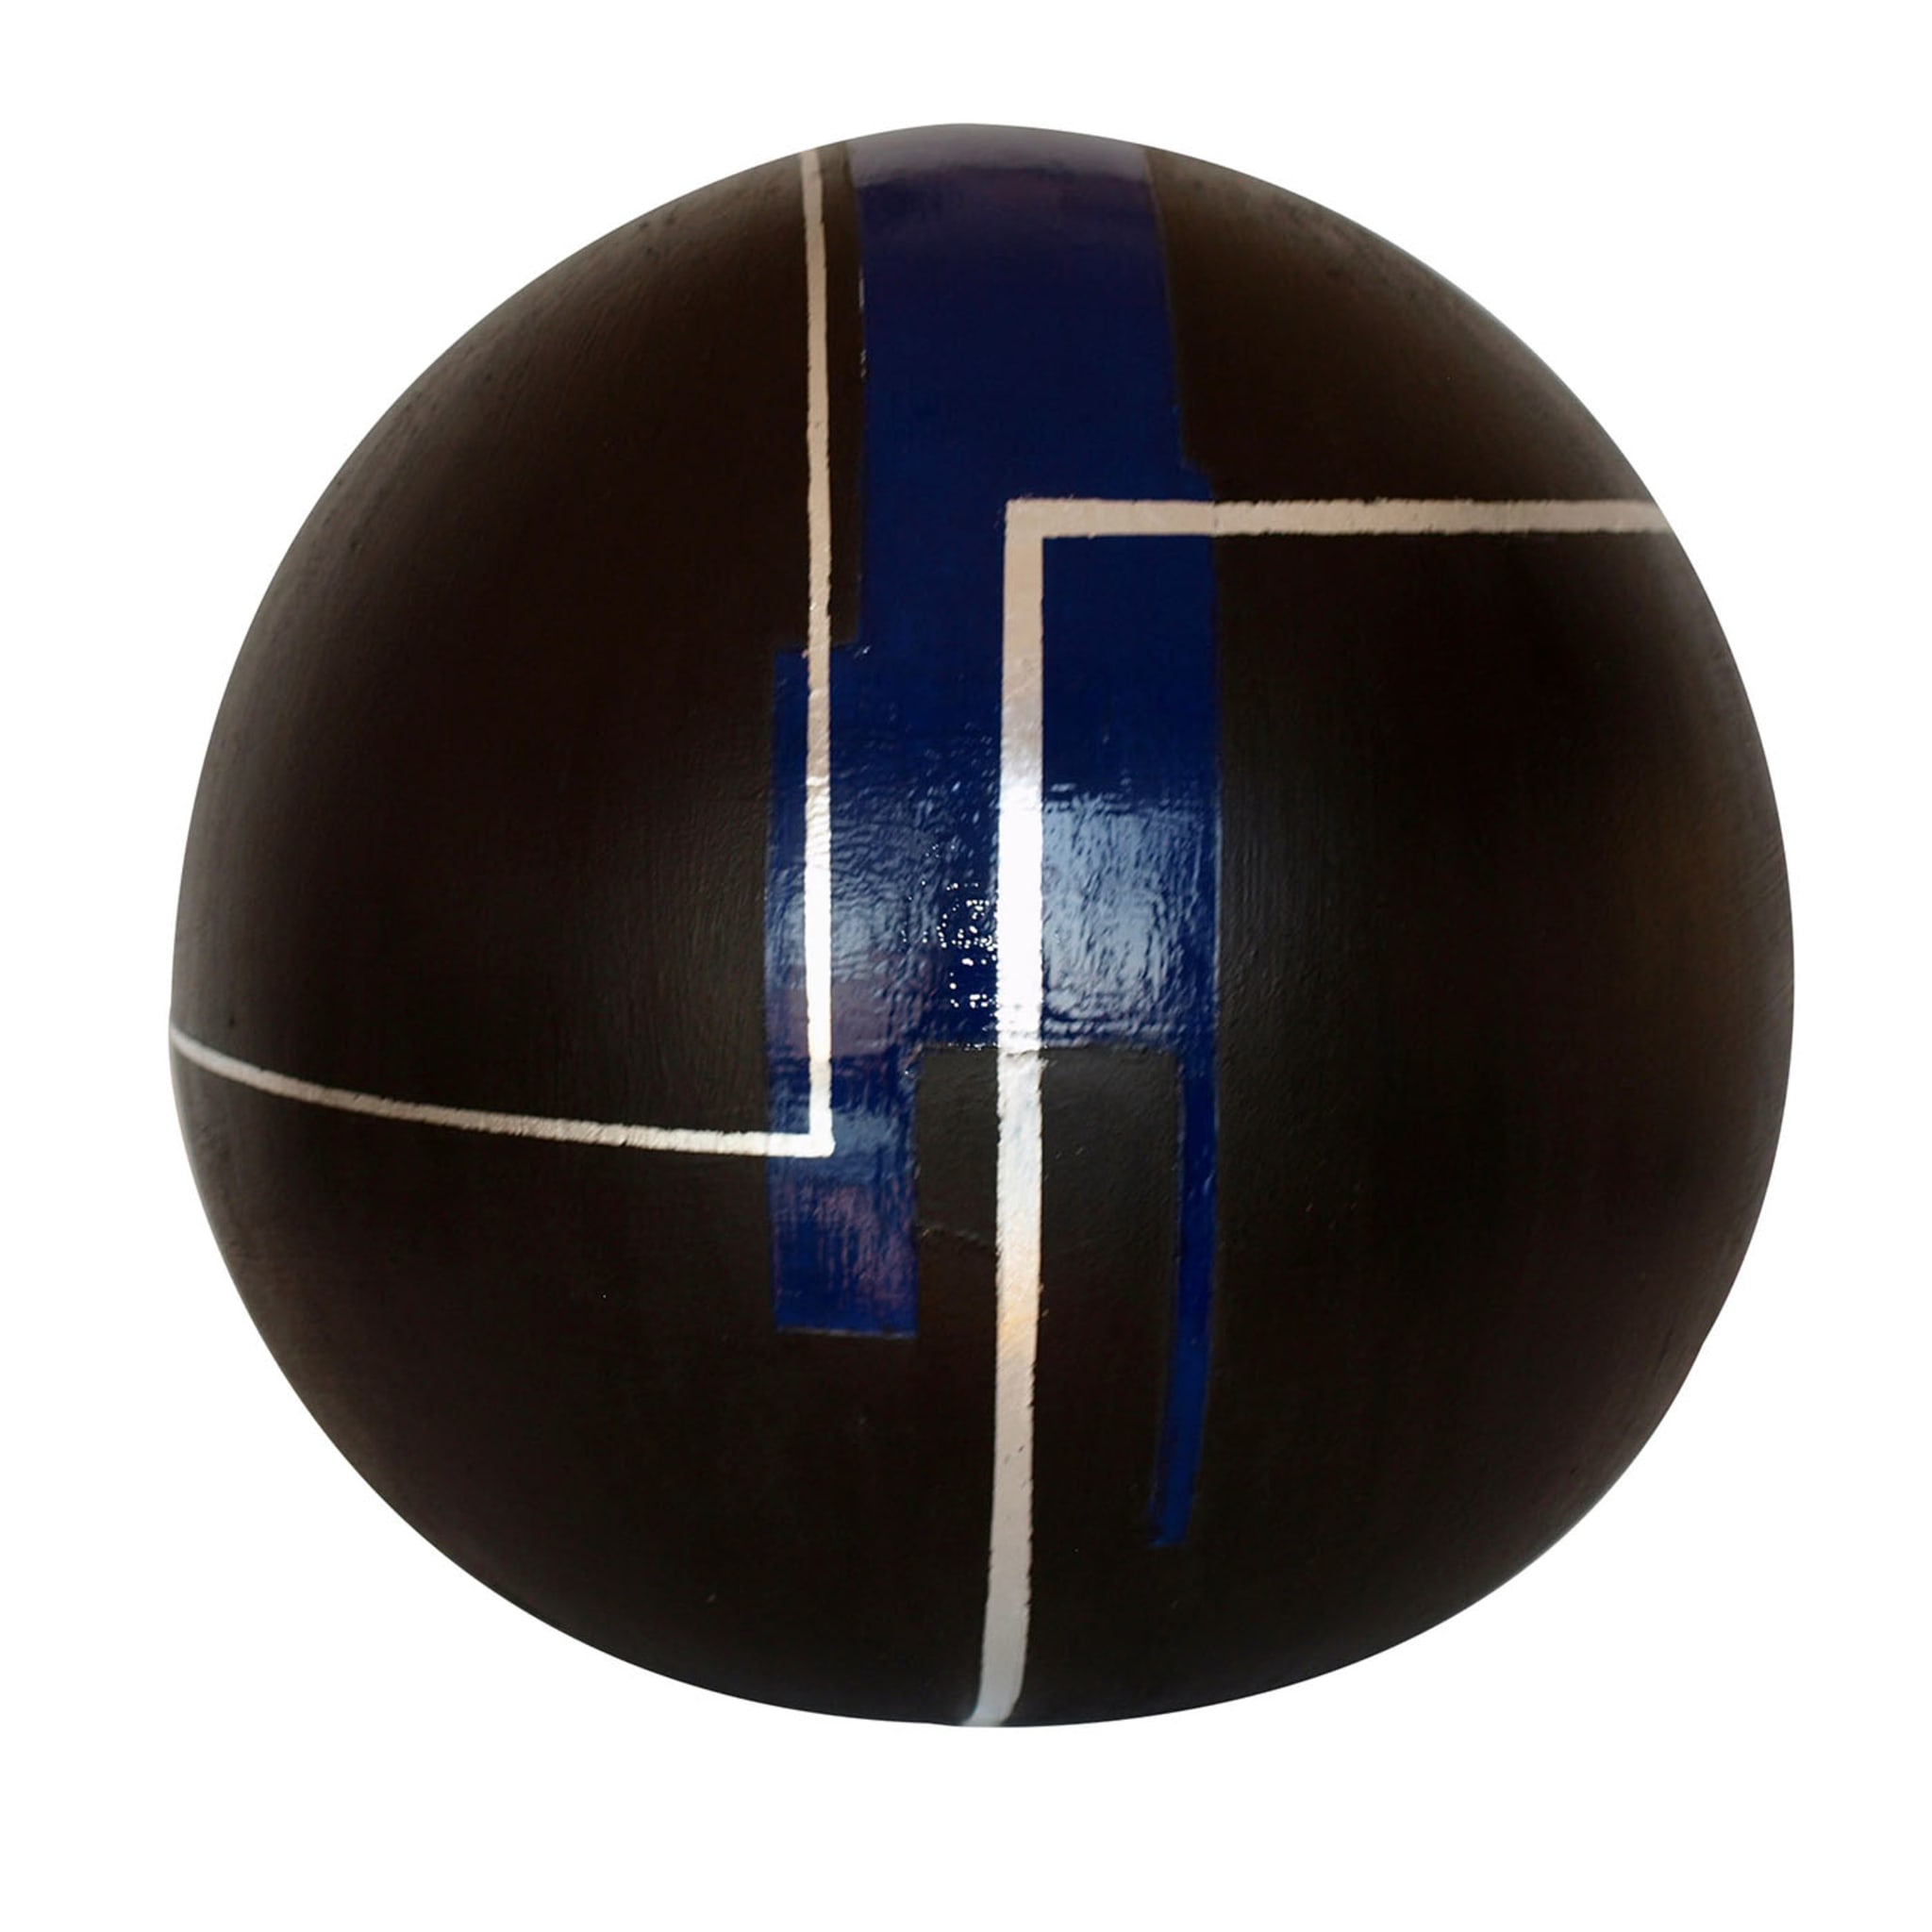 Globo decorativo negro, plateado y azul nº 79 - Vista principal